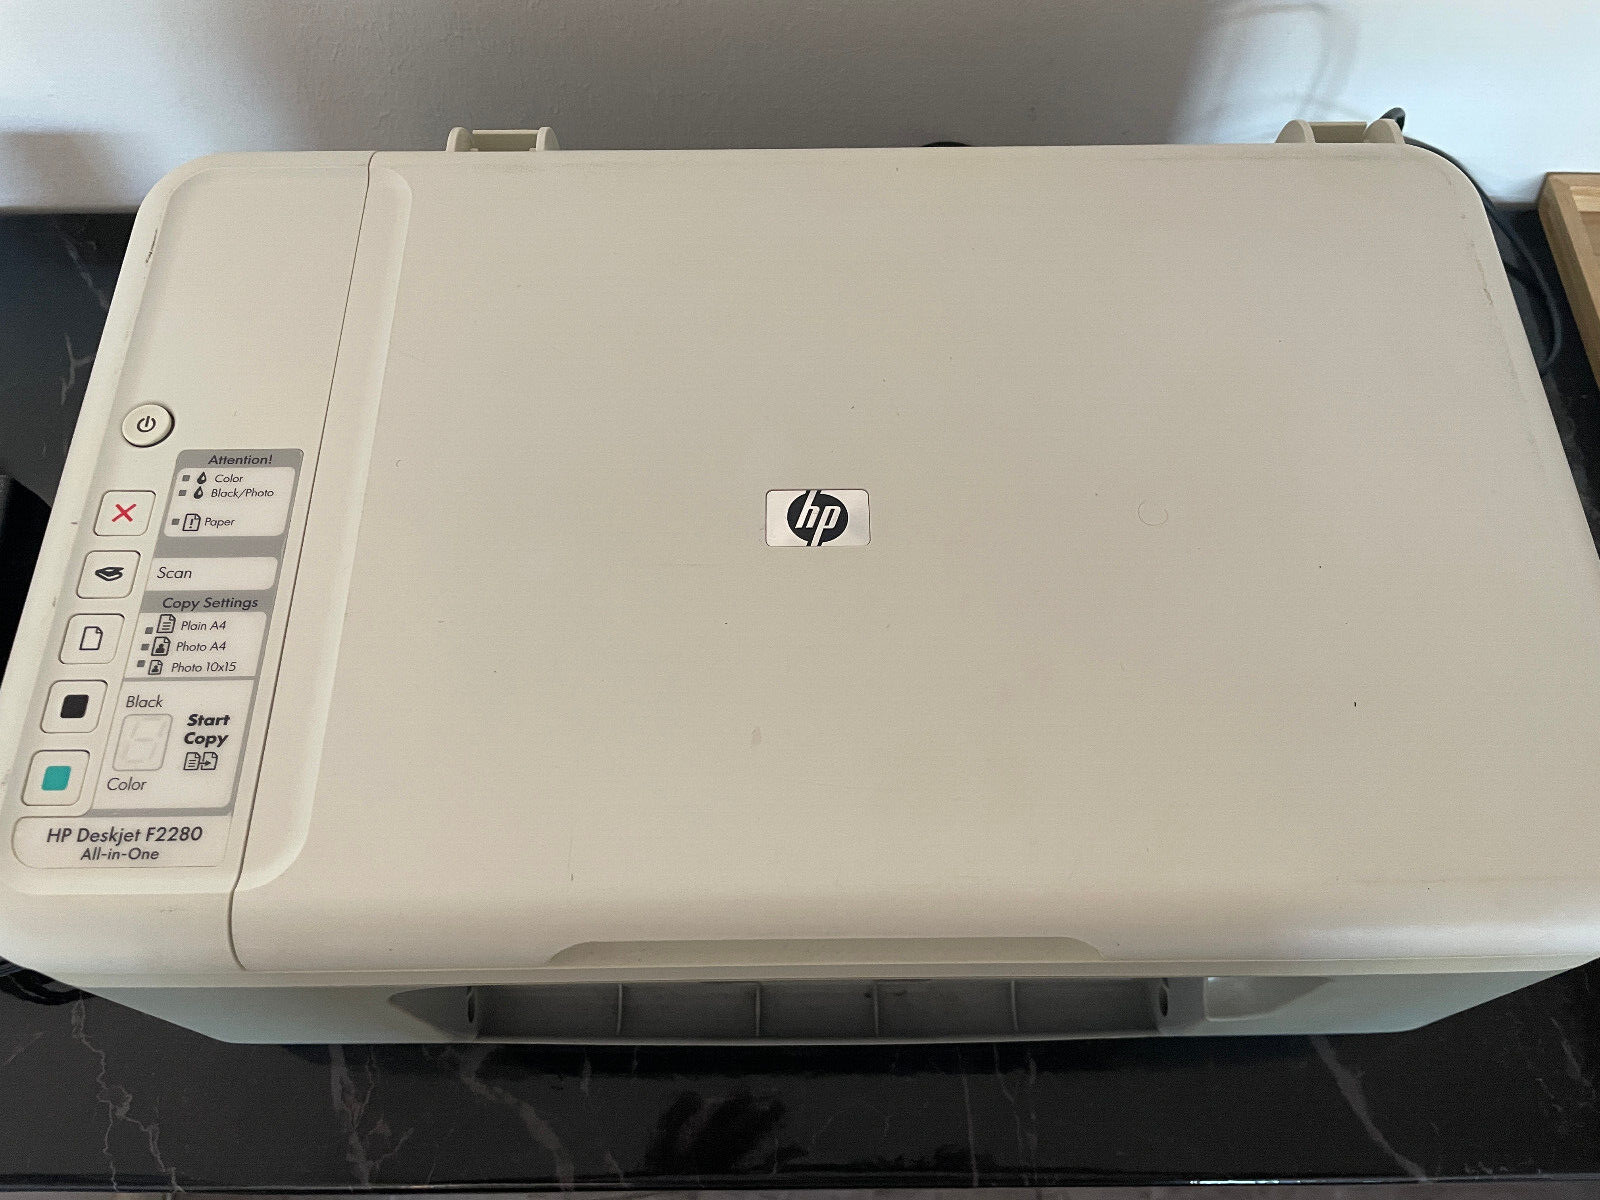 binde Glamour salt HP DeskJet F2280 All-in-One Drucker - Weiß/Grau online kaufen | eBay